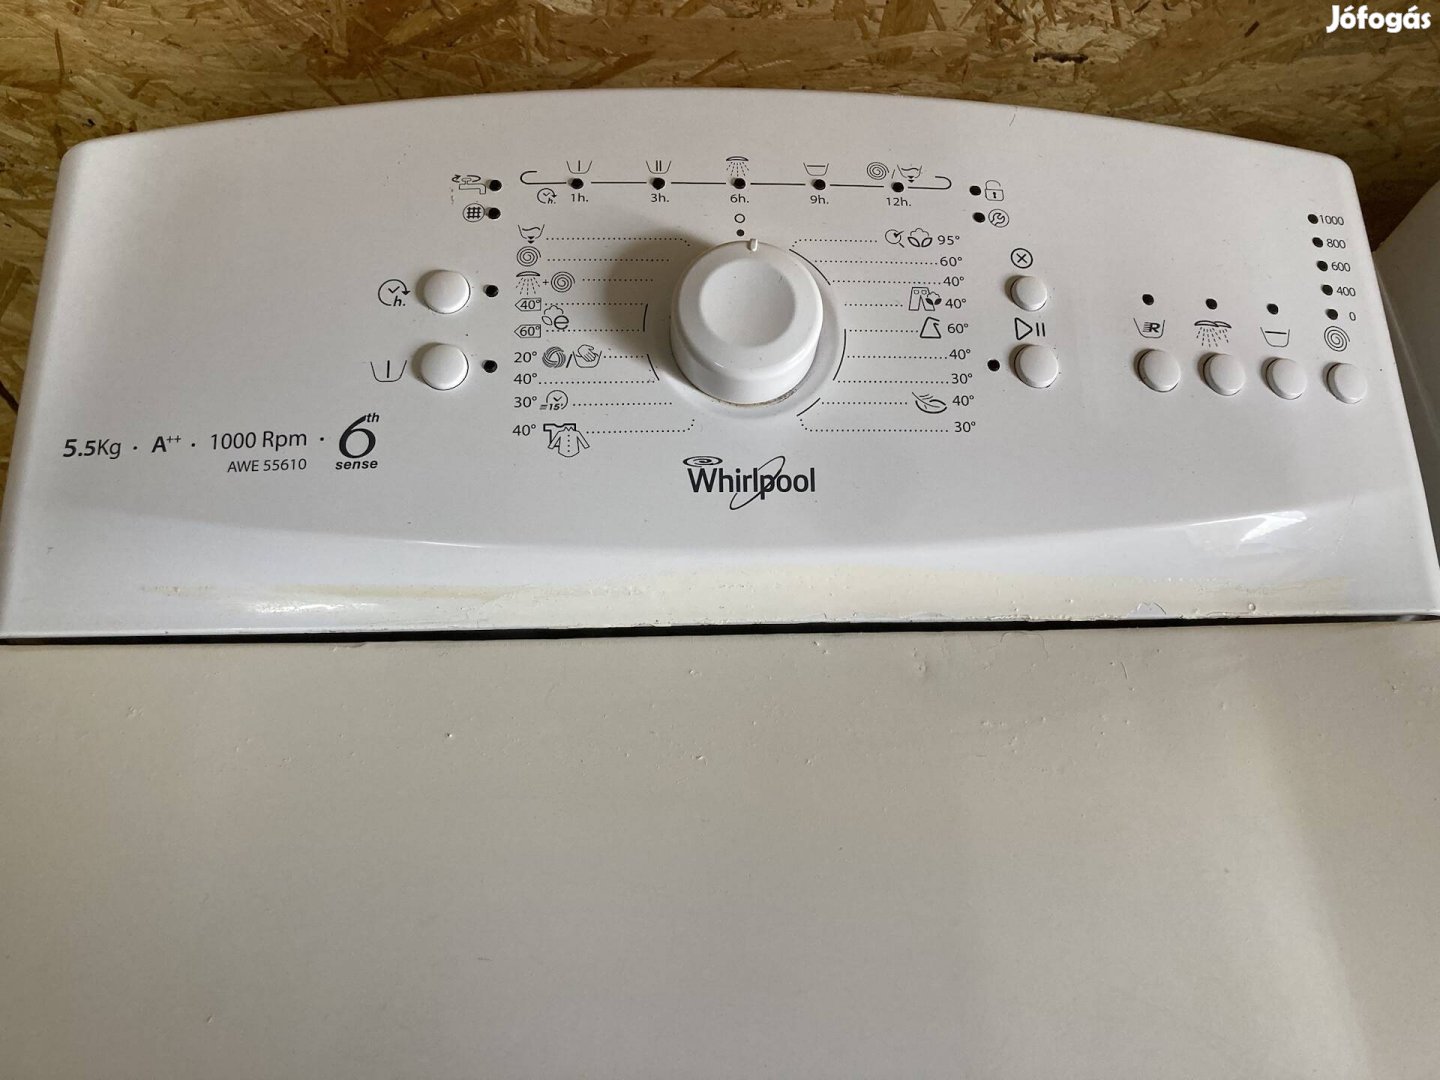 3 év garanciával szépséghibás Whirpool mosógép 